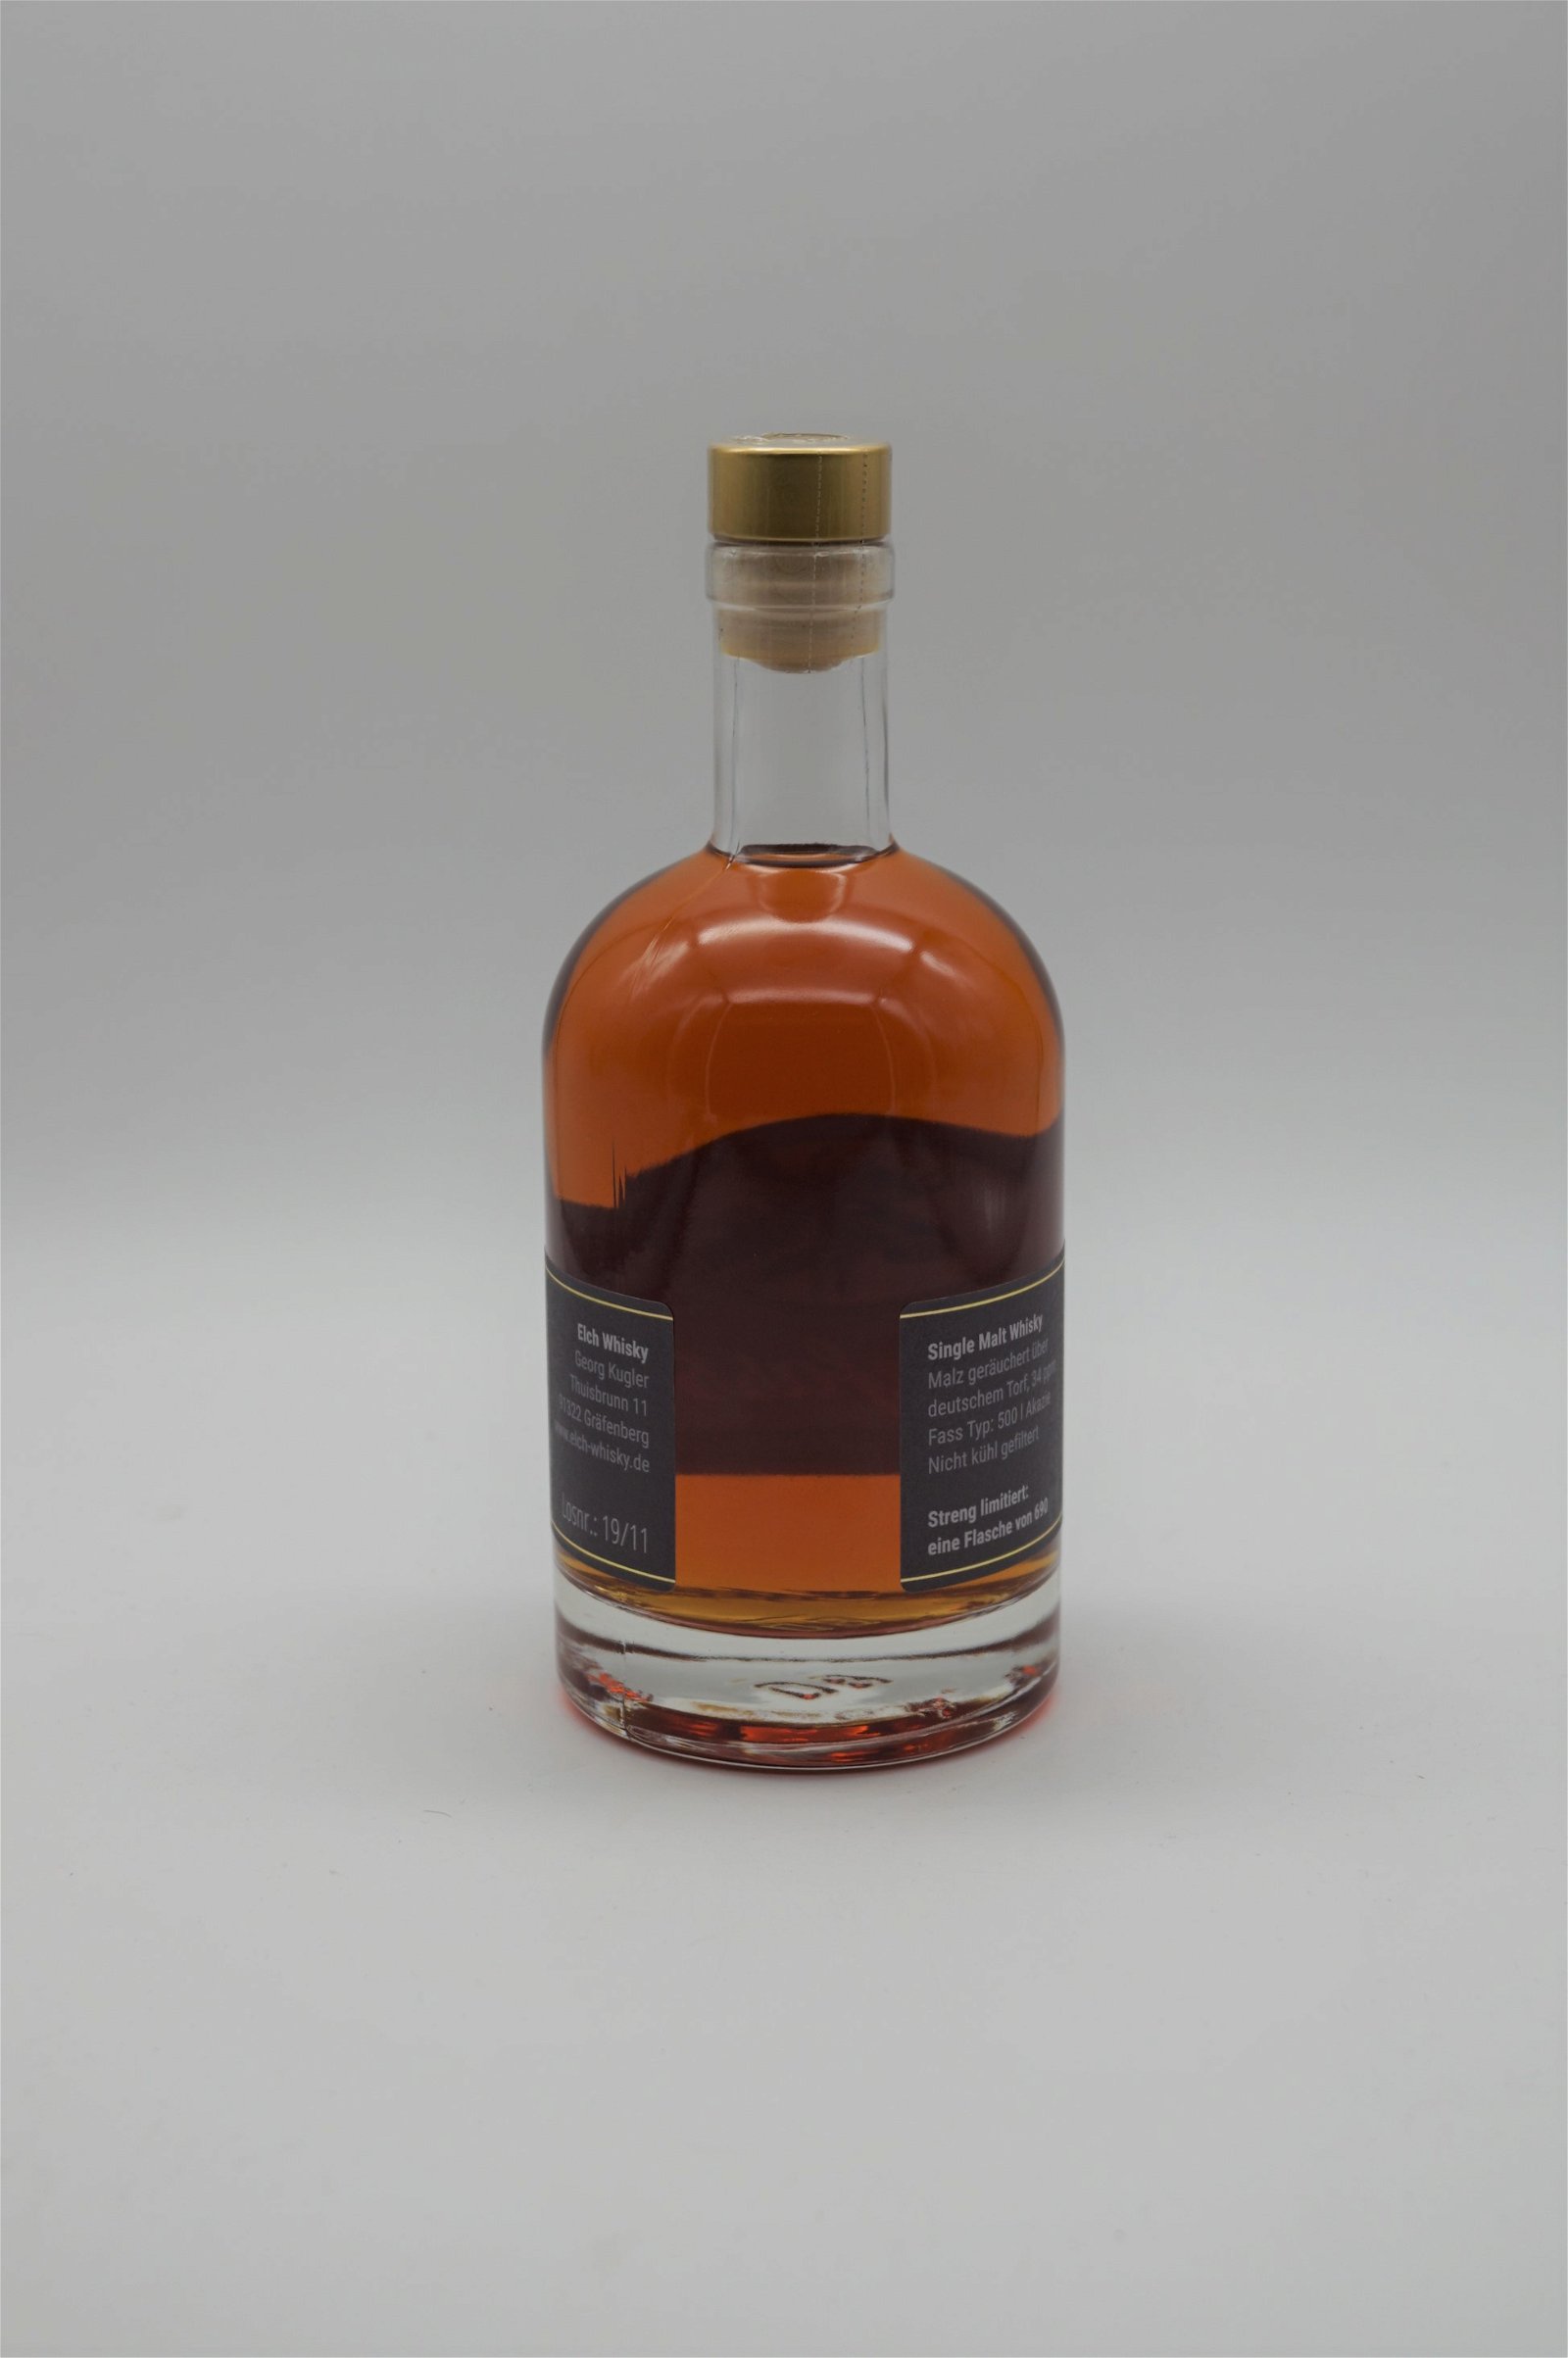 Elch Whisky Akazienfass Nr.15